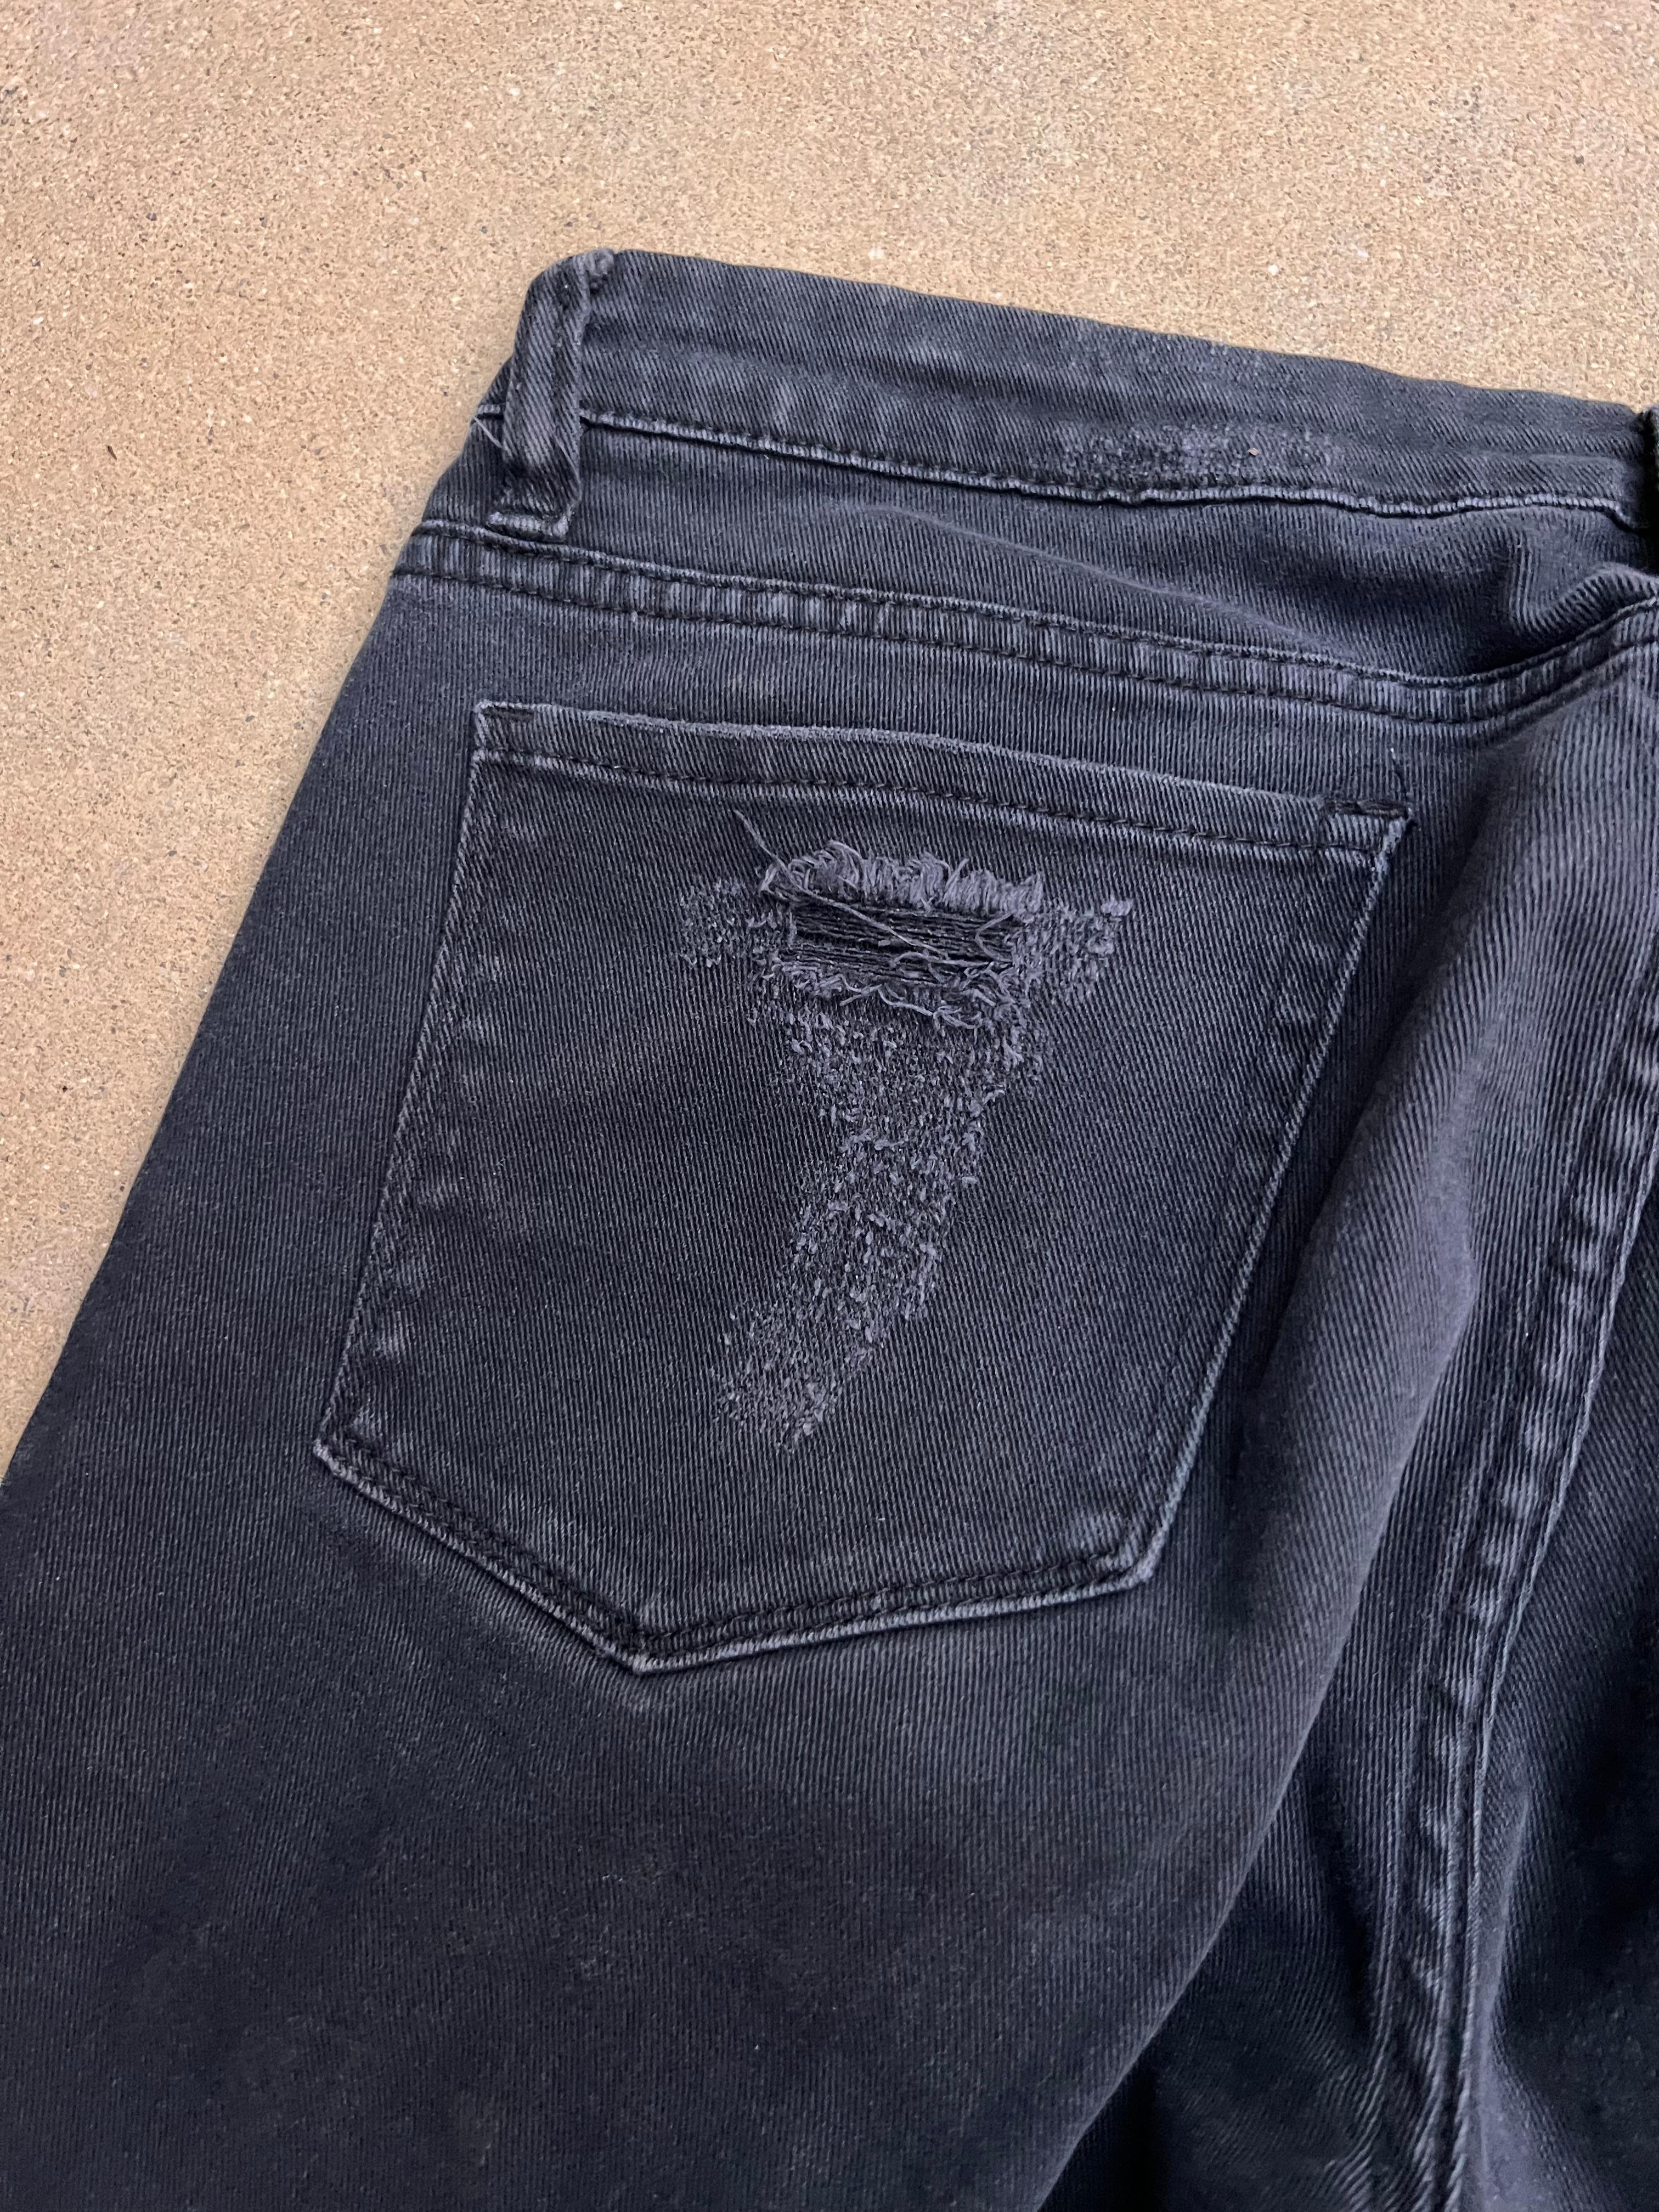 Blanki Black Denim Jeans, Size 31 For Sale 3